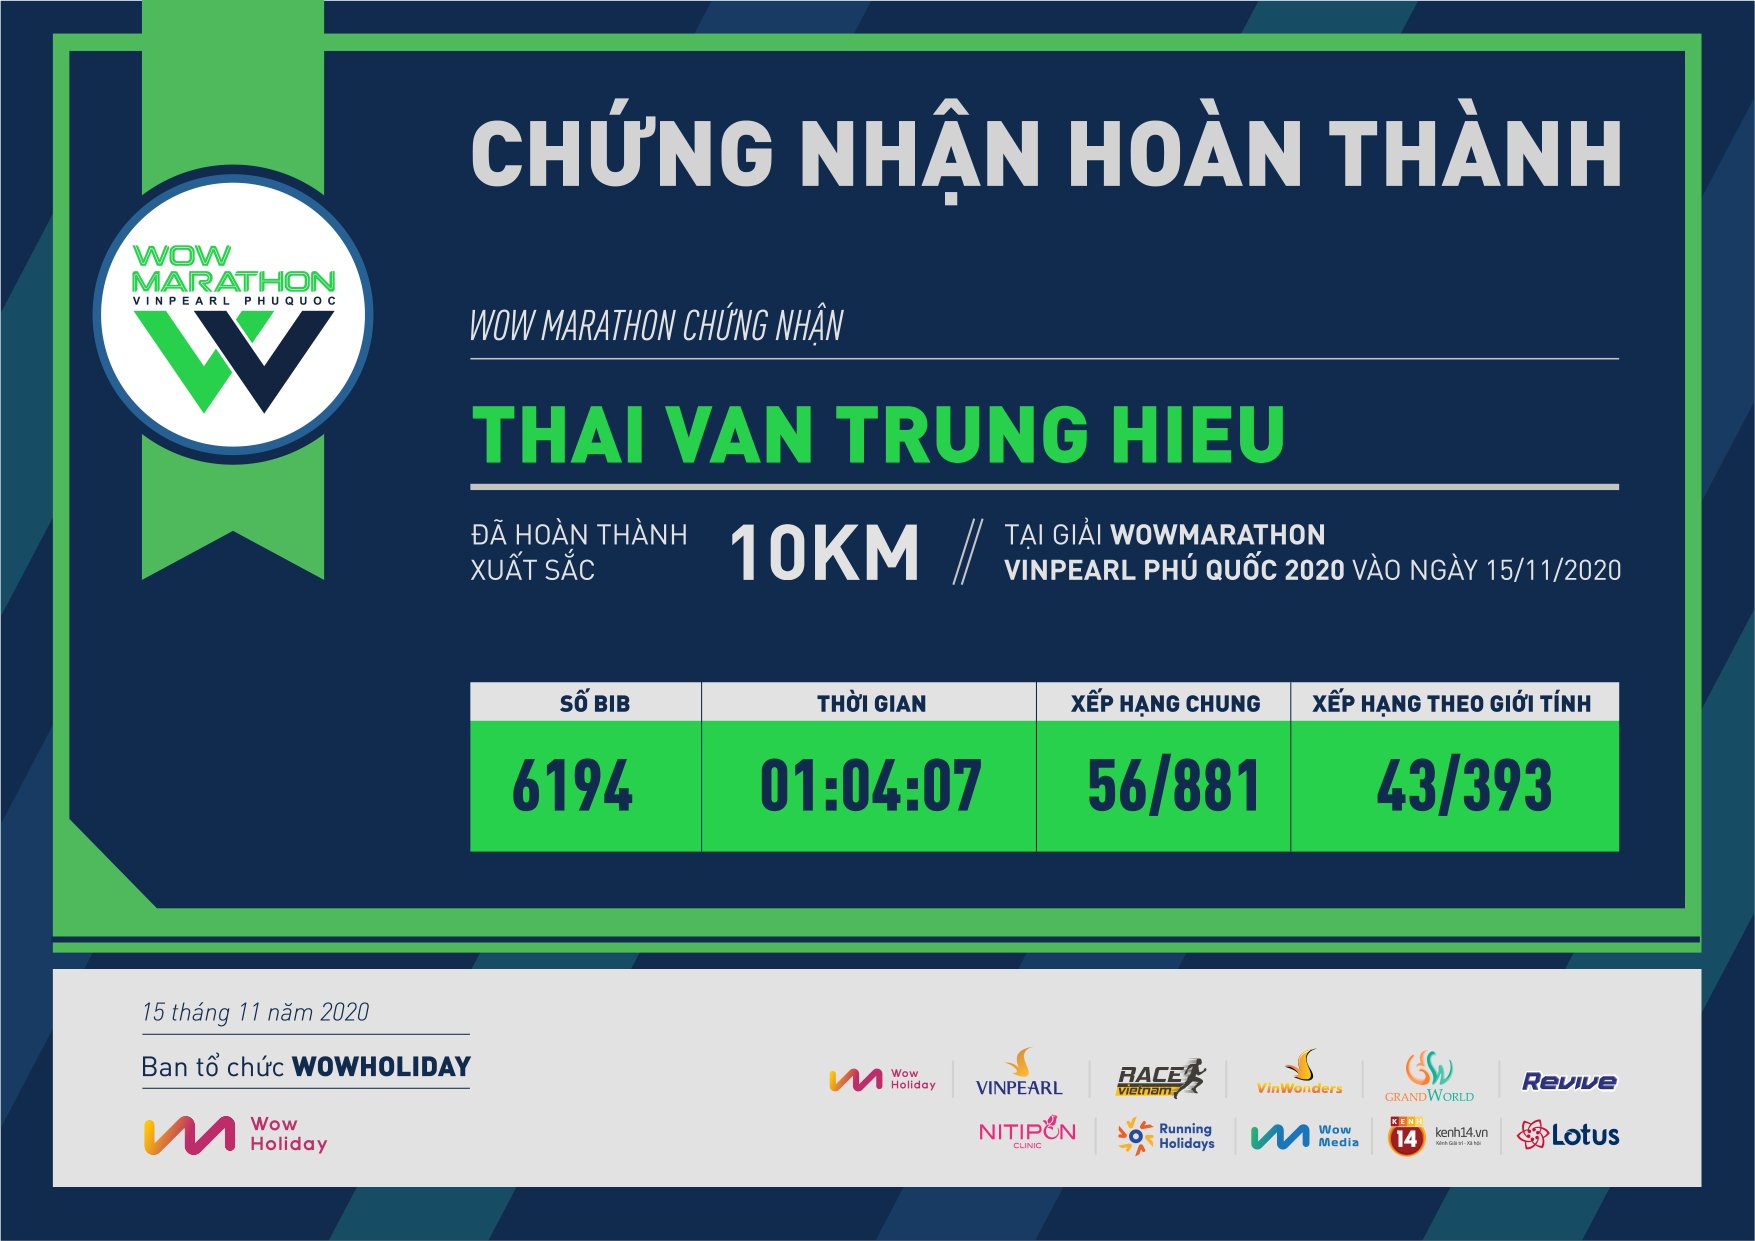 6194 - Thai Van Trung Hieu